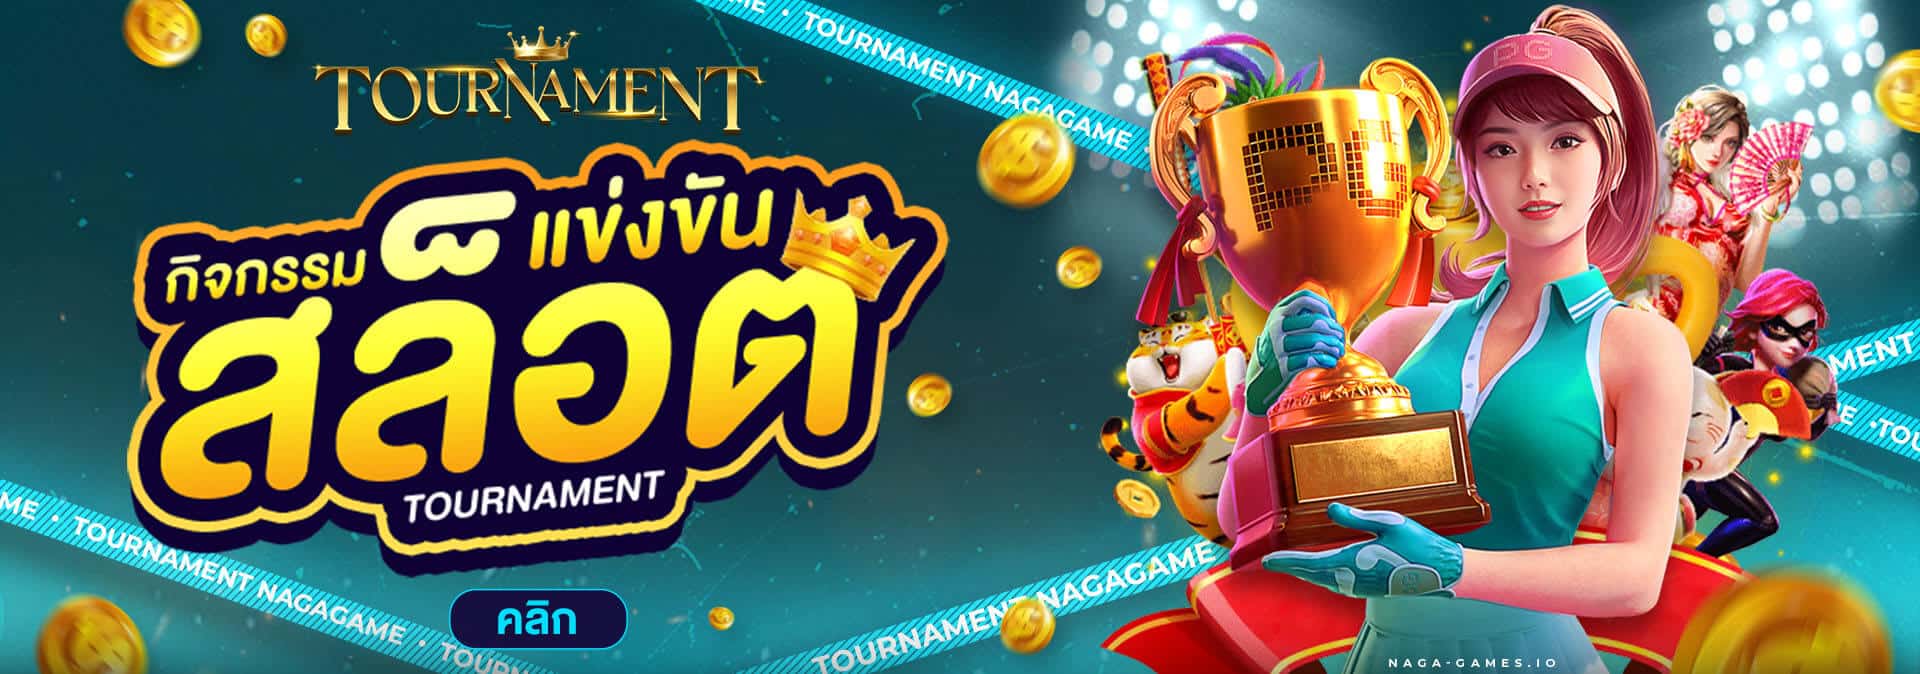 Tournament Naga Games